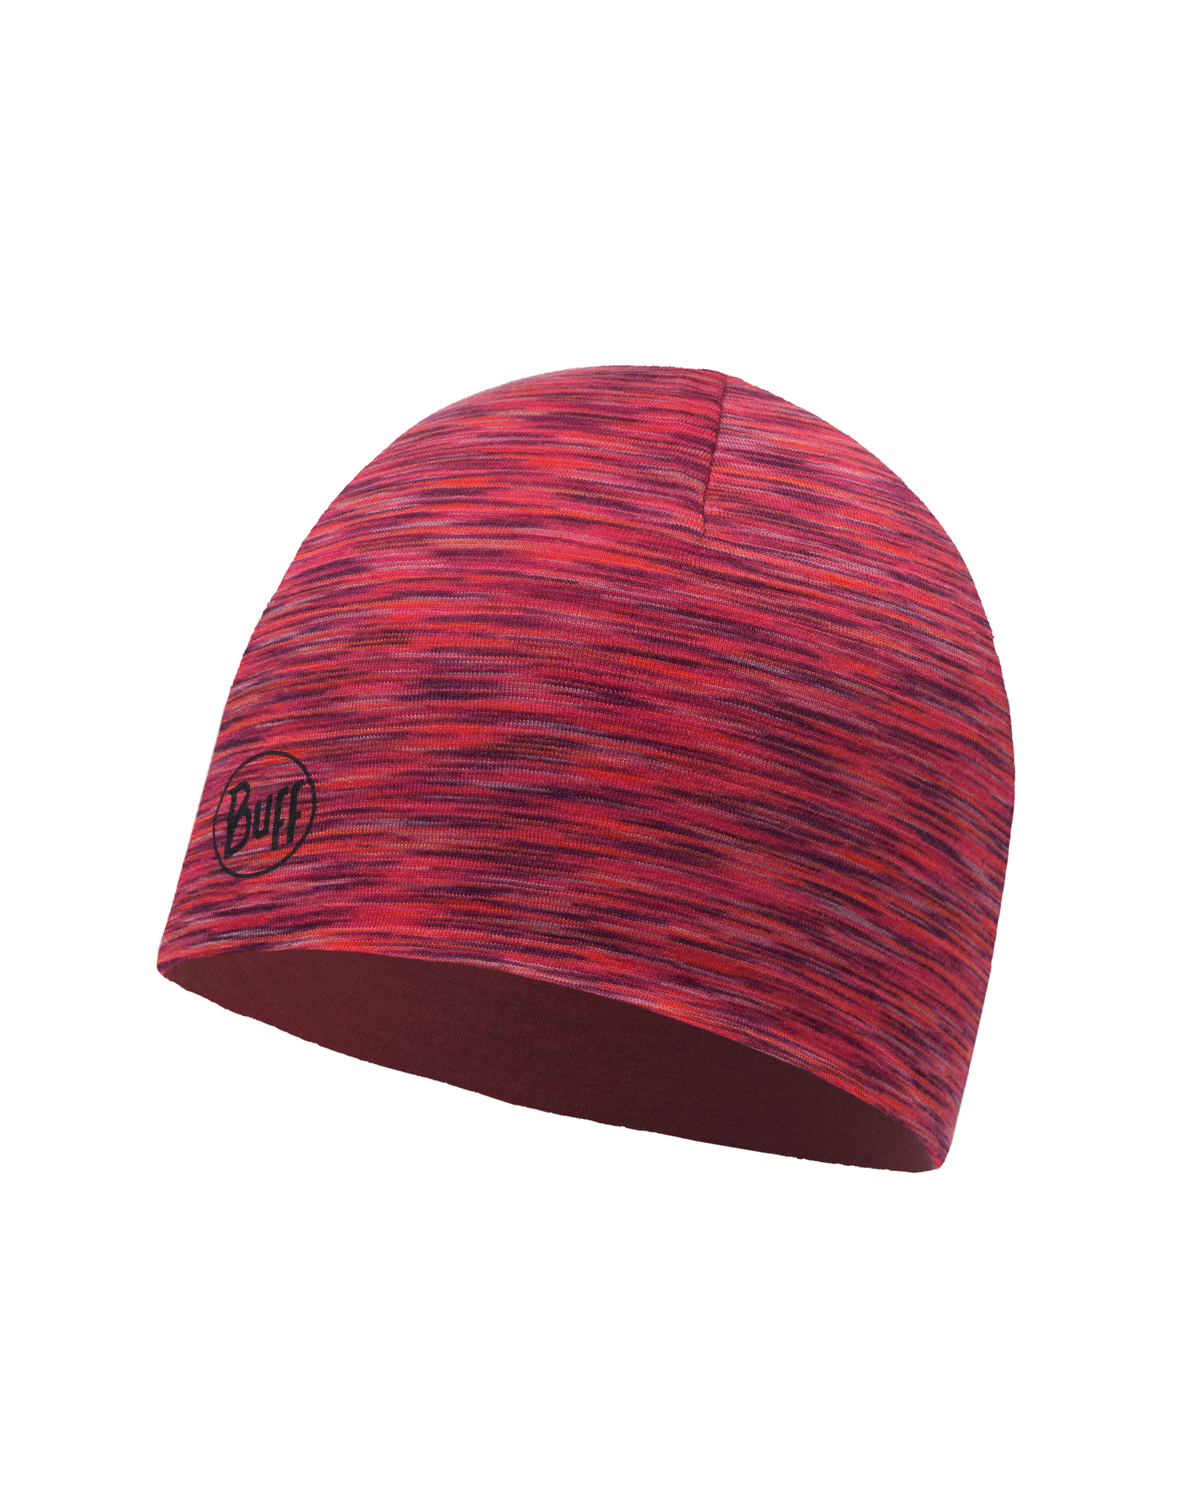 Шапка Buff Lightweight Merino Wool Reversible Hat Wild Pink-Rusty